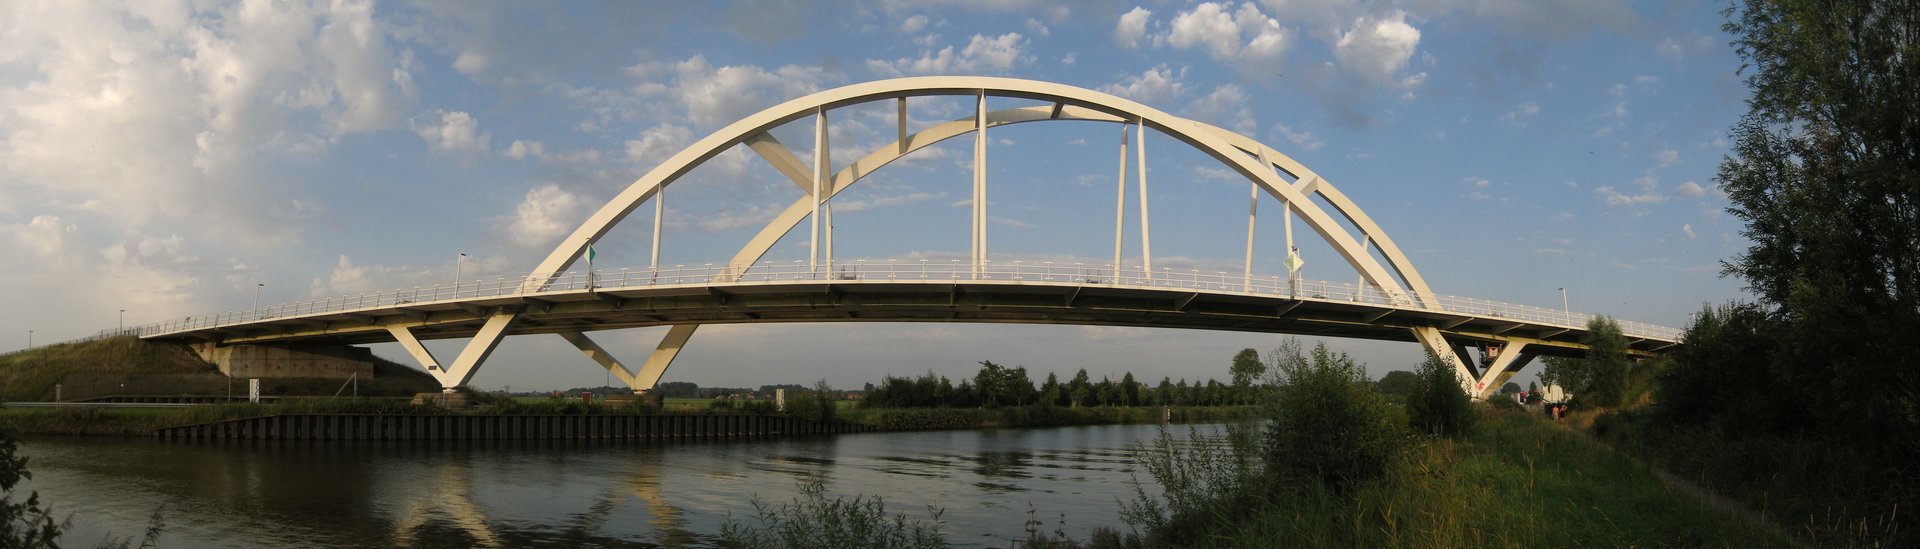 De Walfridusbrug over het Van Starkenborghkanaal in de stad Groningen